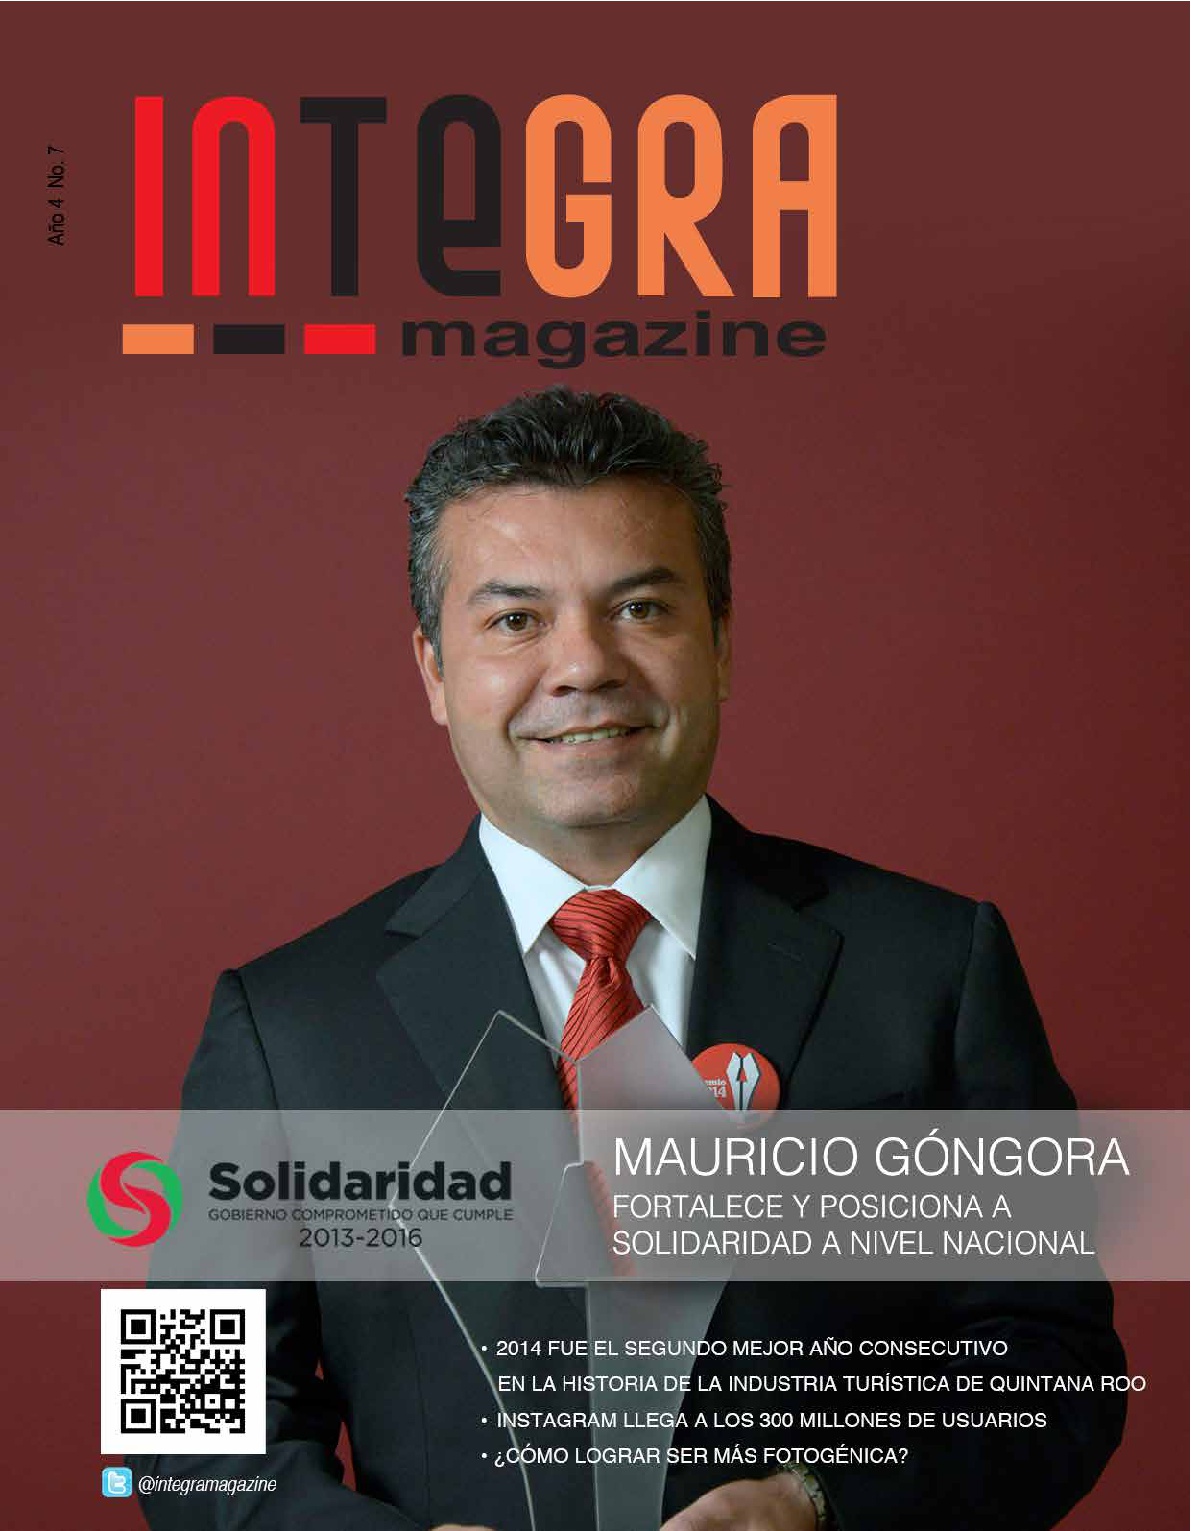 Mauricio Góngora fortalece y posiciona a Solidaridad a nivel nacional